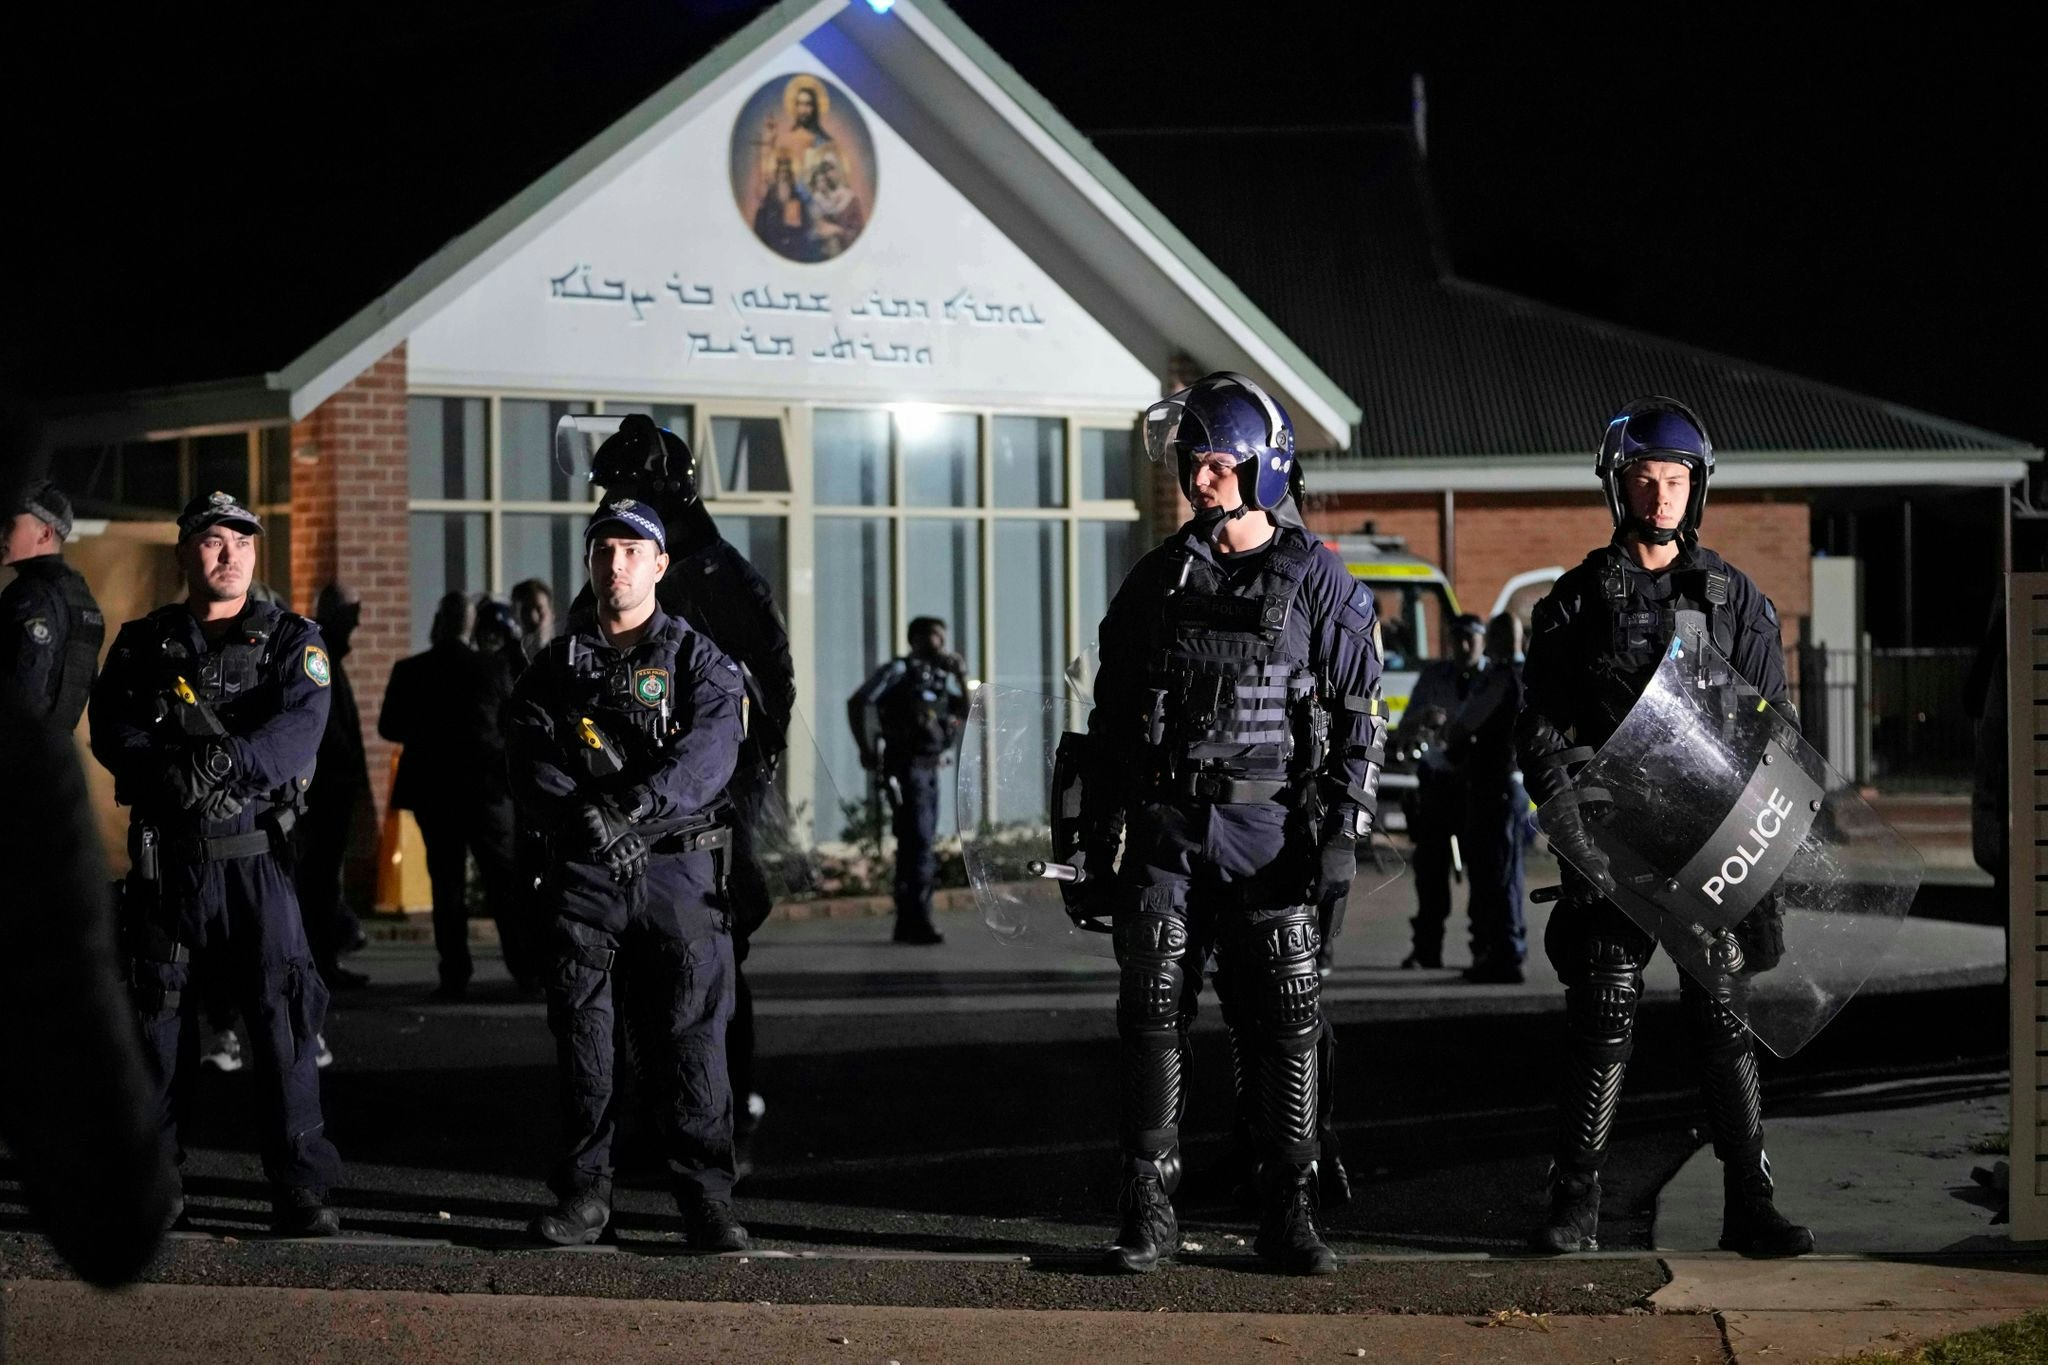 extremismus: polizei wertet angriff auf priester in sydney als terrorakt